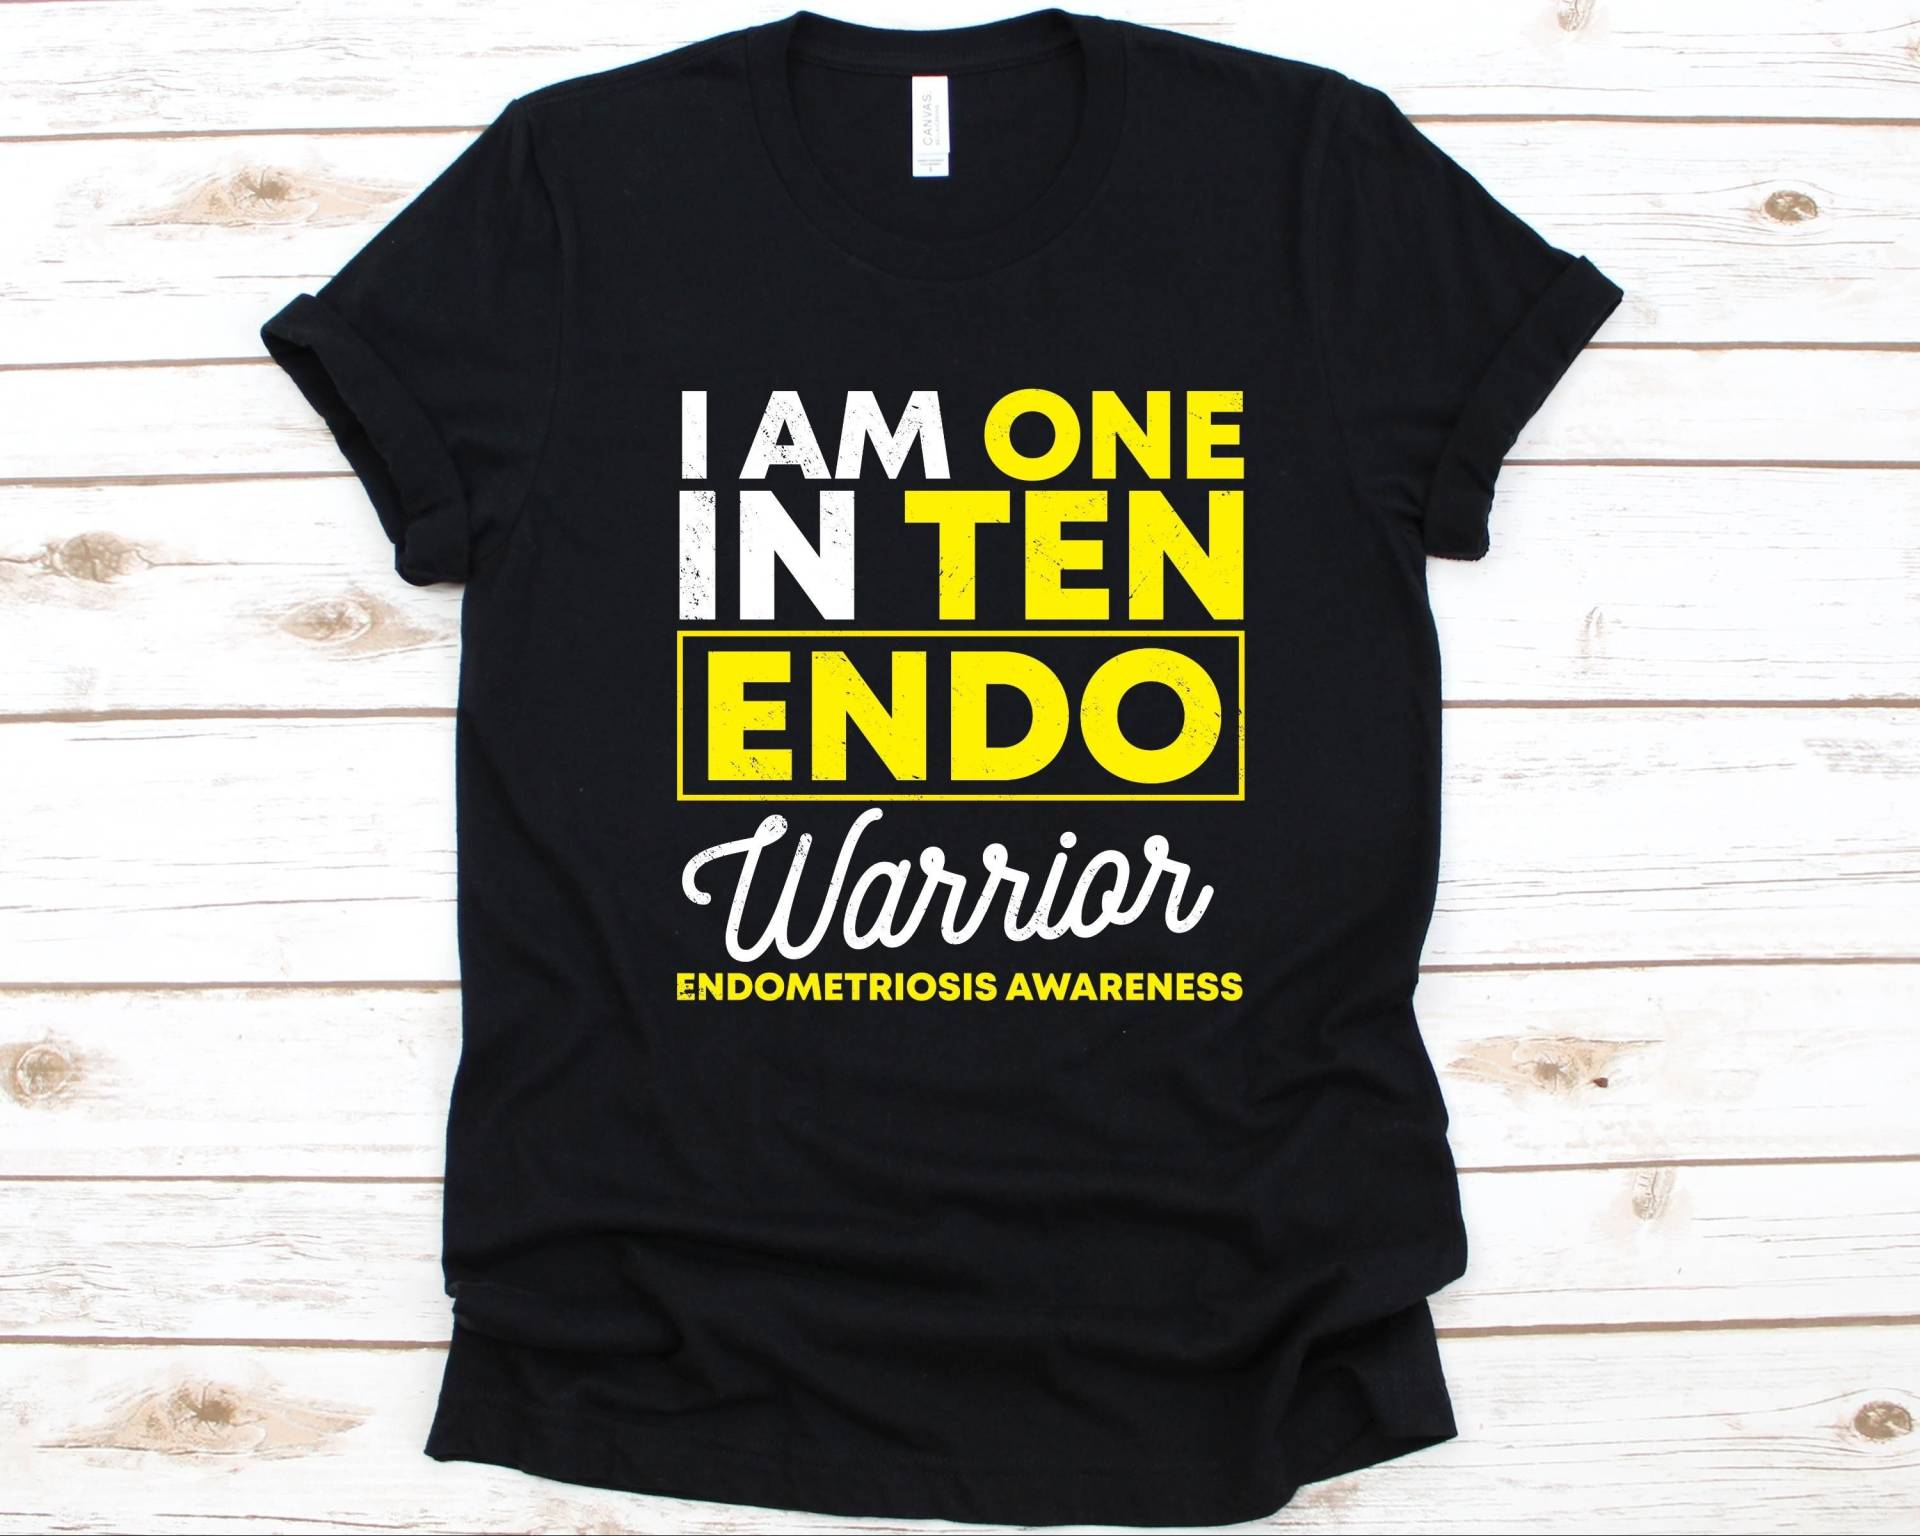 I Am One in Ten Endo Warrior Endometriosis Awareness Shirt, Fighter Shirt Für Männer Und Frauen, Endometrium Unordnung von AbbysDesignFactory